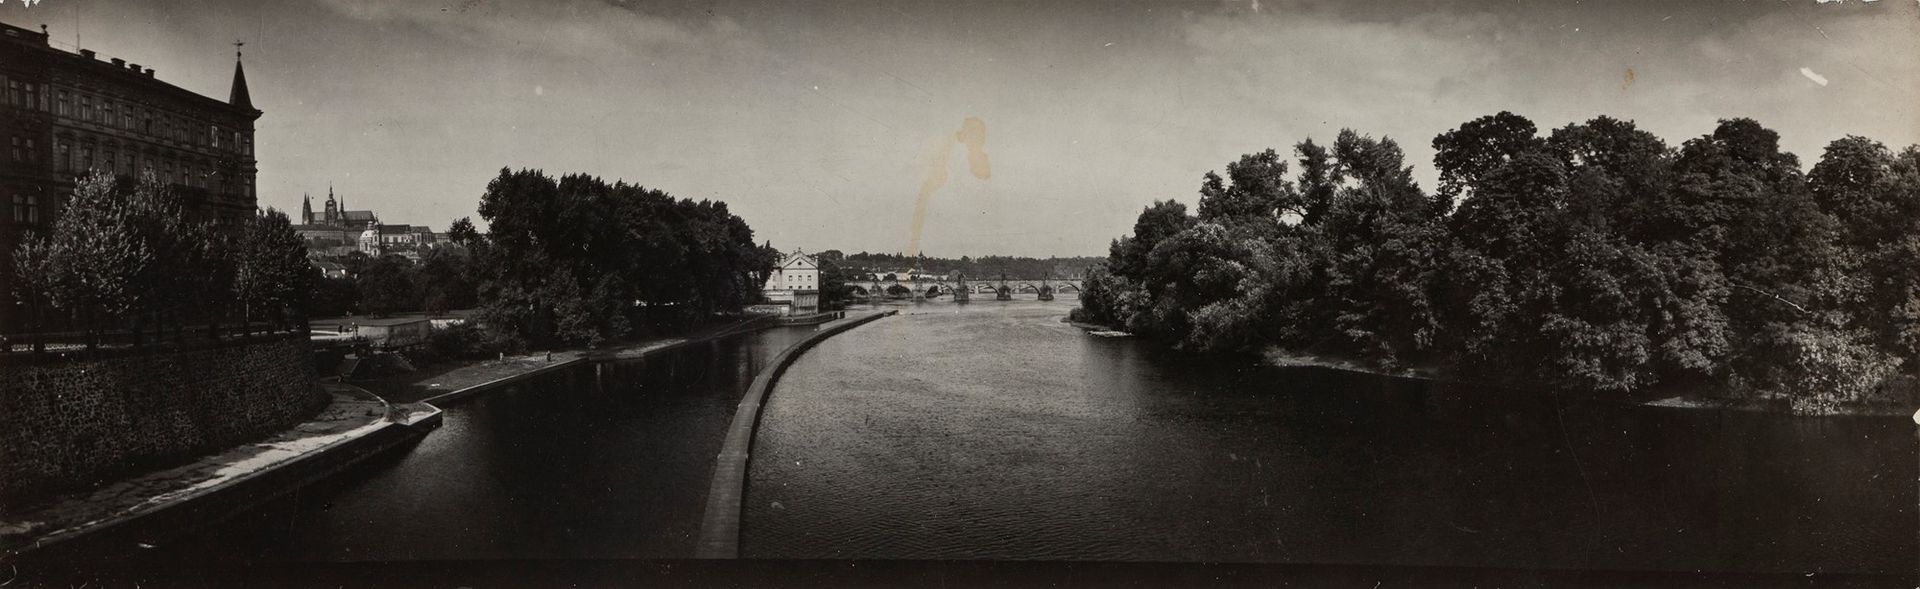 Josef Sudek Josef Sudek (1896-1976) - Panoramique de Prague, années 1950

Épreuv&hellip;